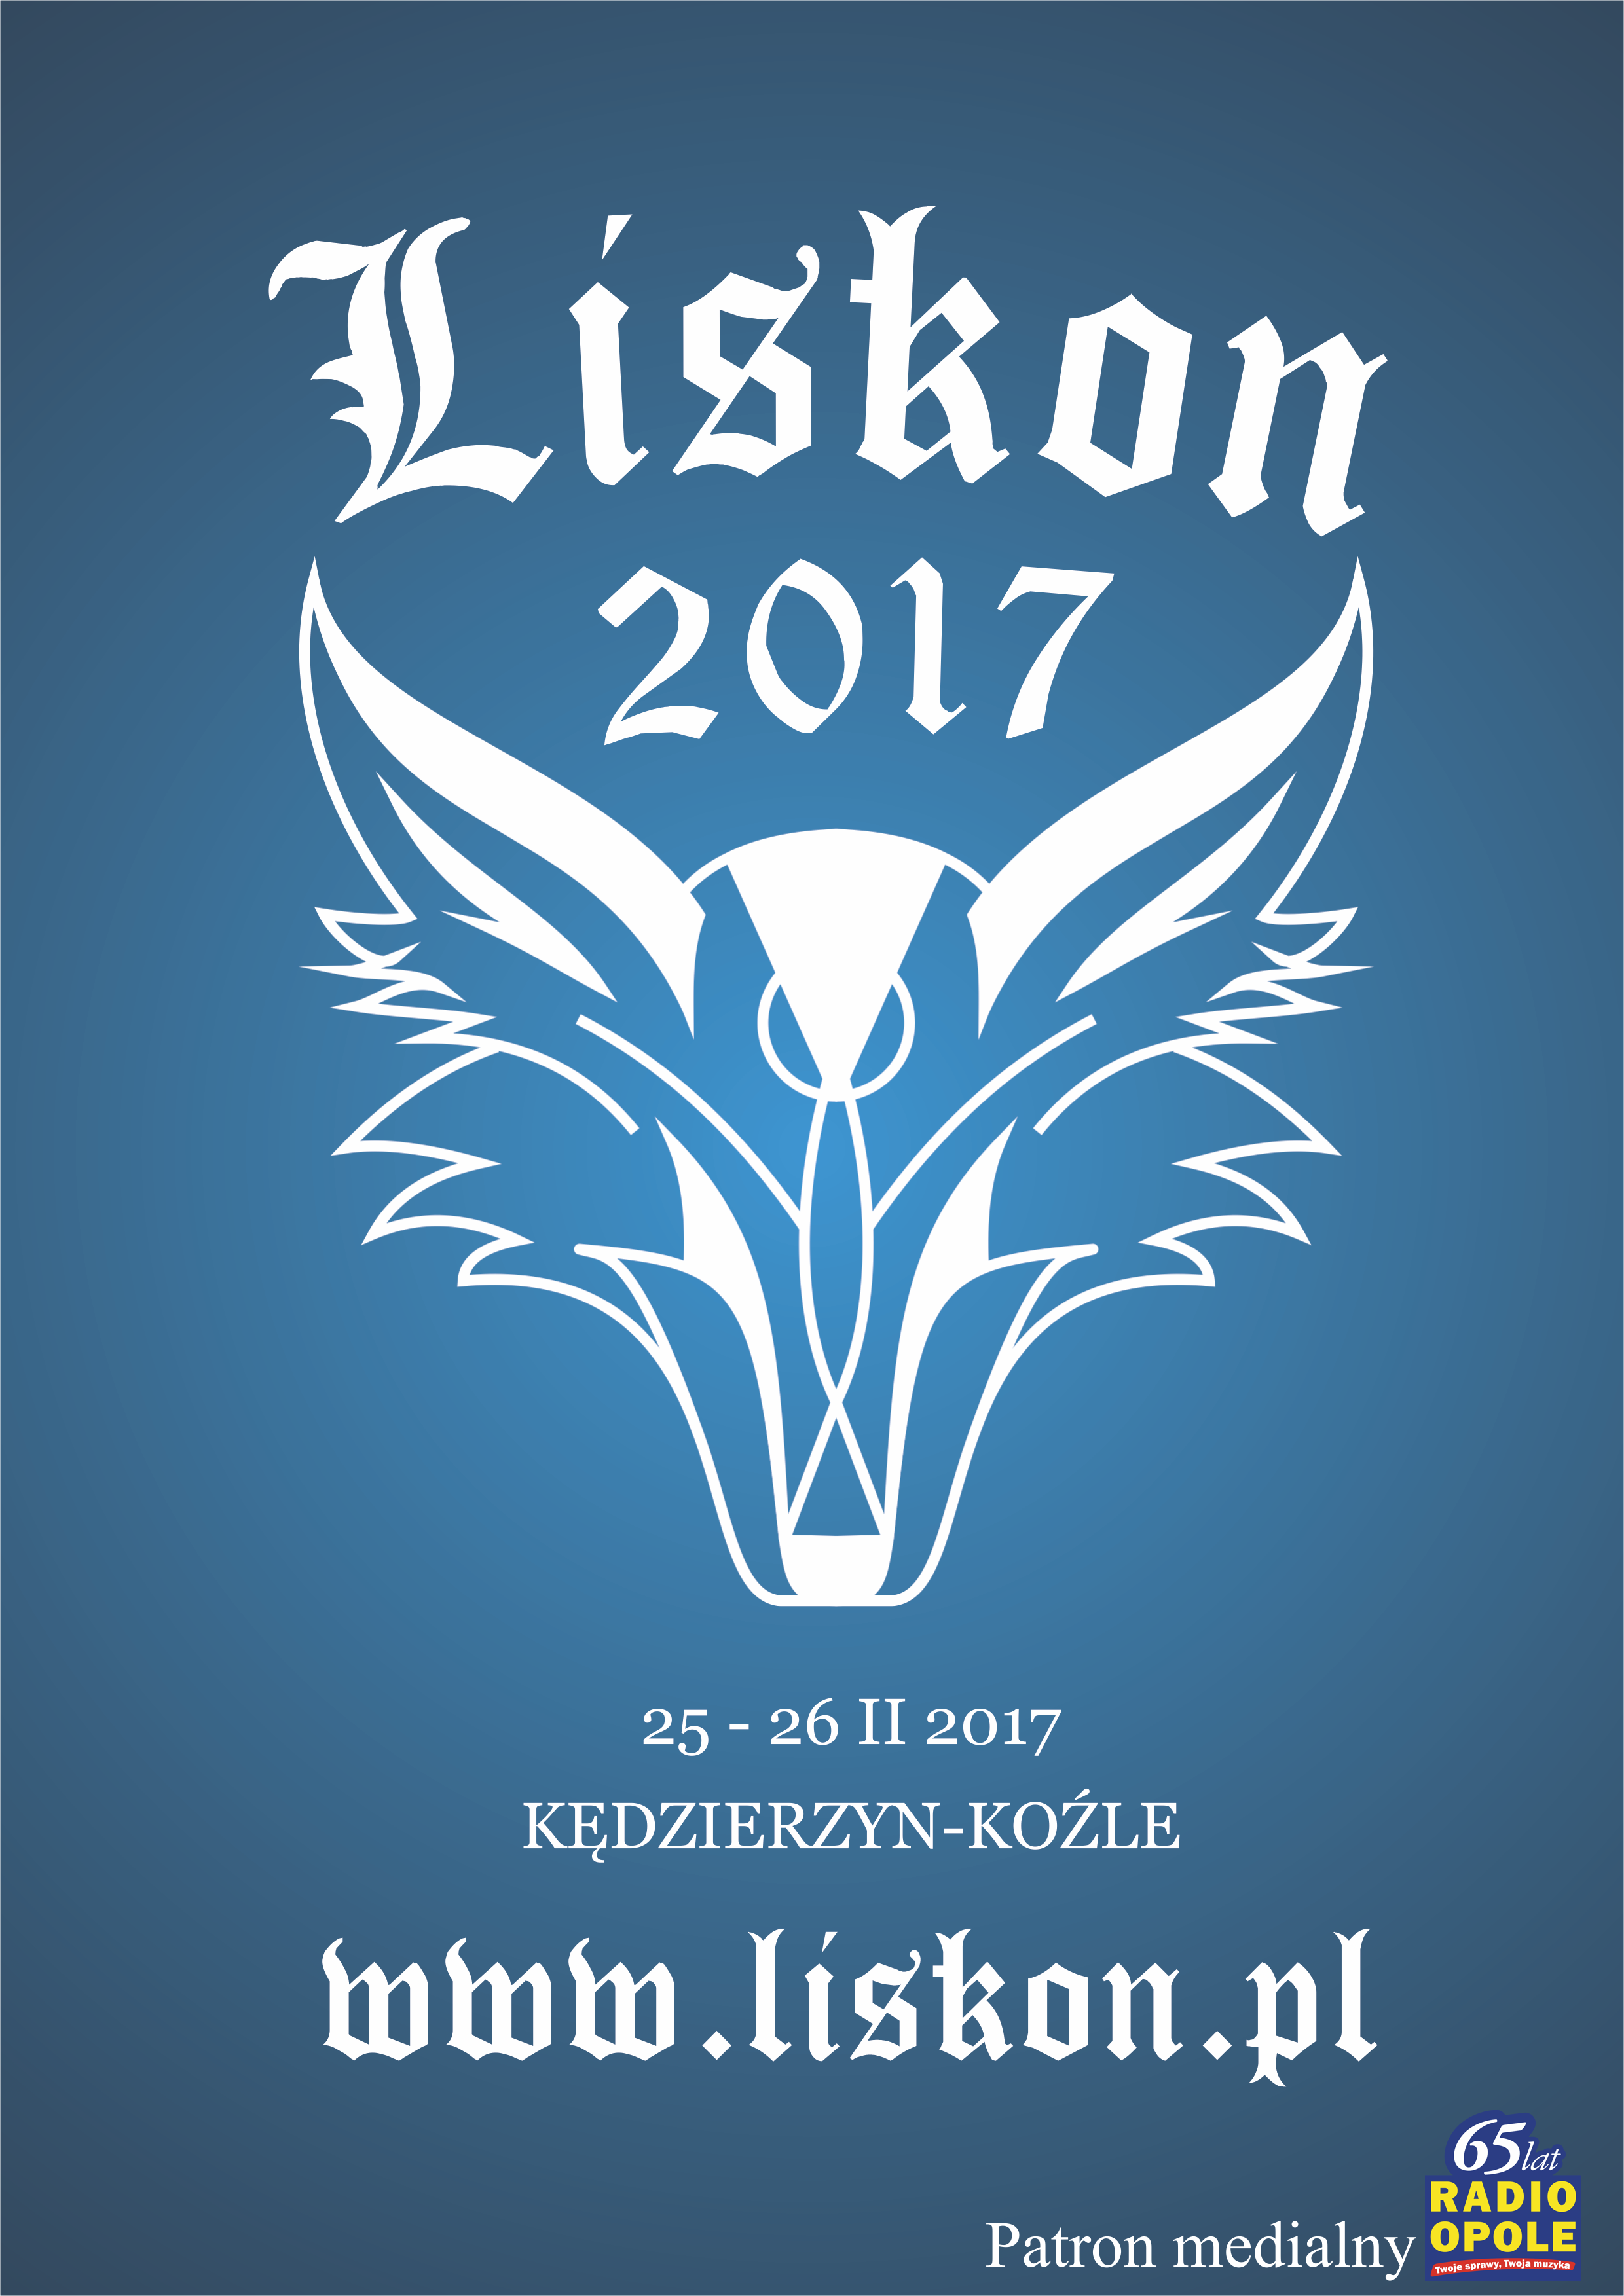 Liskon 2017, czyli 3 edycja konwentu organizowanego przez nieformalną Grupę Łaciaty Lis